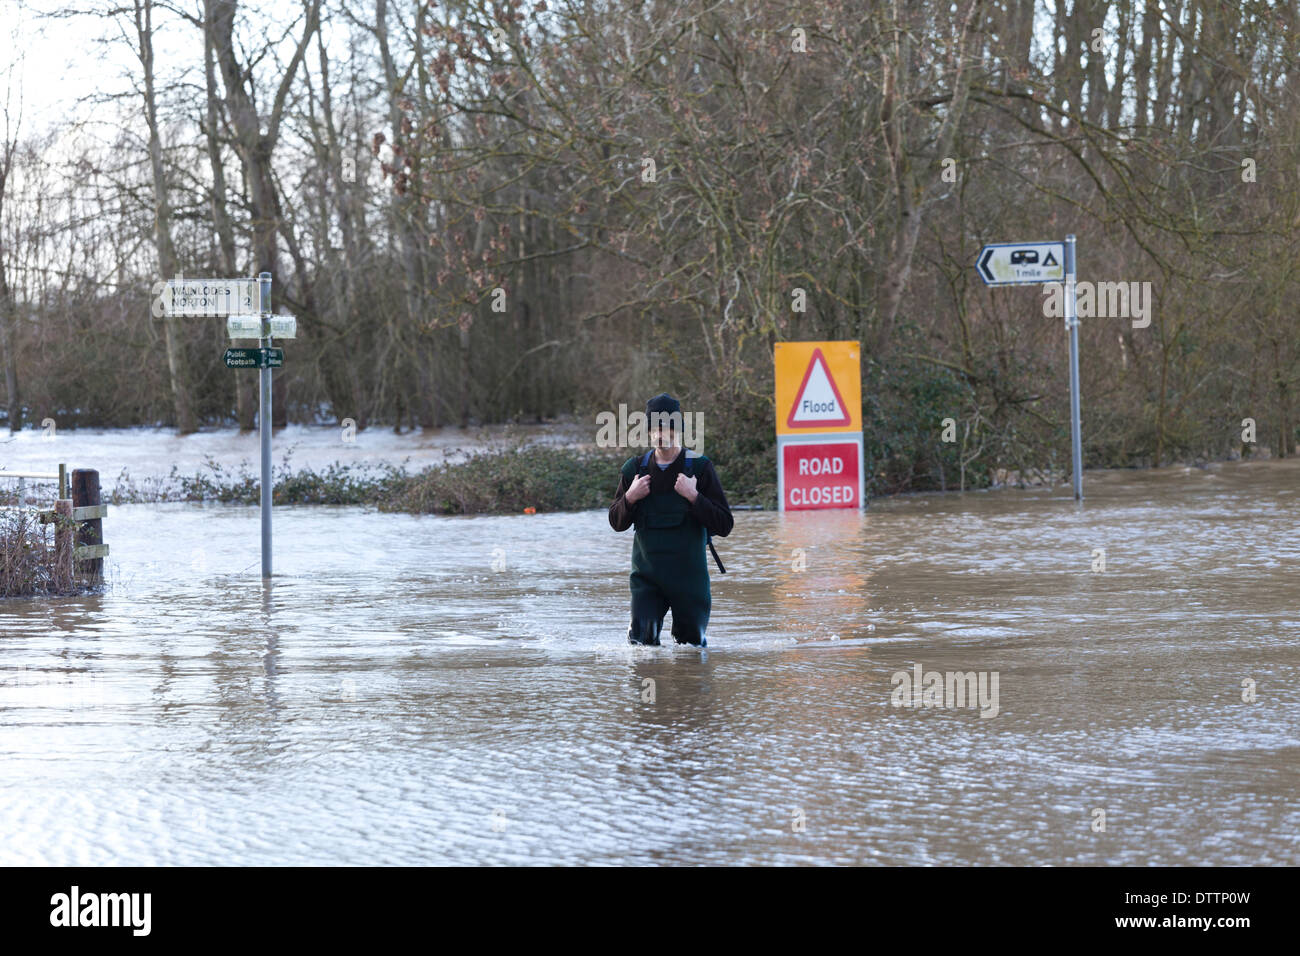 Ex-Soldat zu Fuß durch Hochwasser an Apperley, Gloucestershire UK, Versorgung und Medikamente für einen kranken Freund zu liefern. Stockfoto